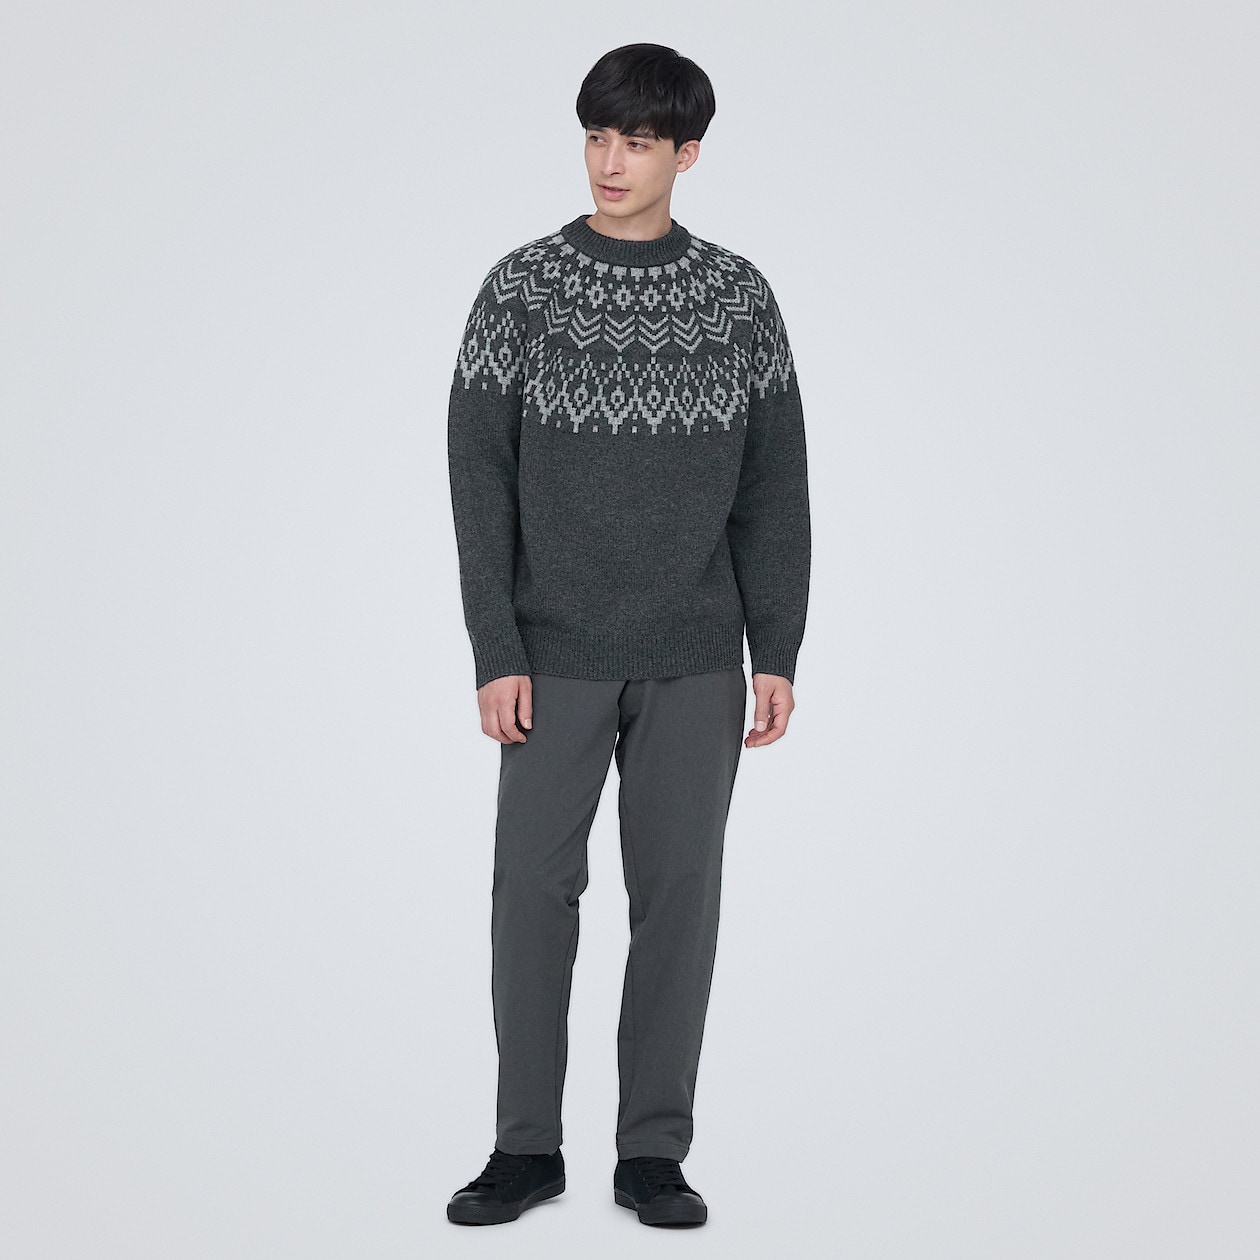 メリノウールジャカード編みクルーネックセーター | 無印良品